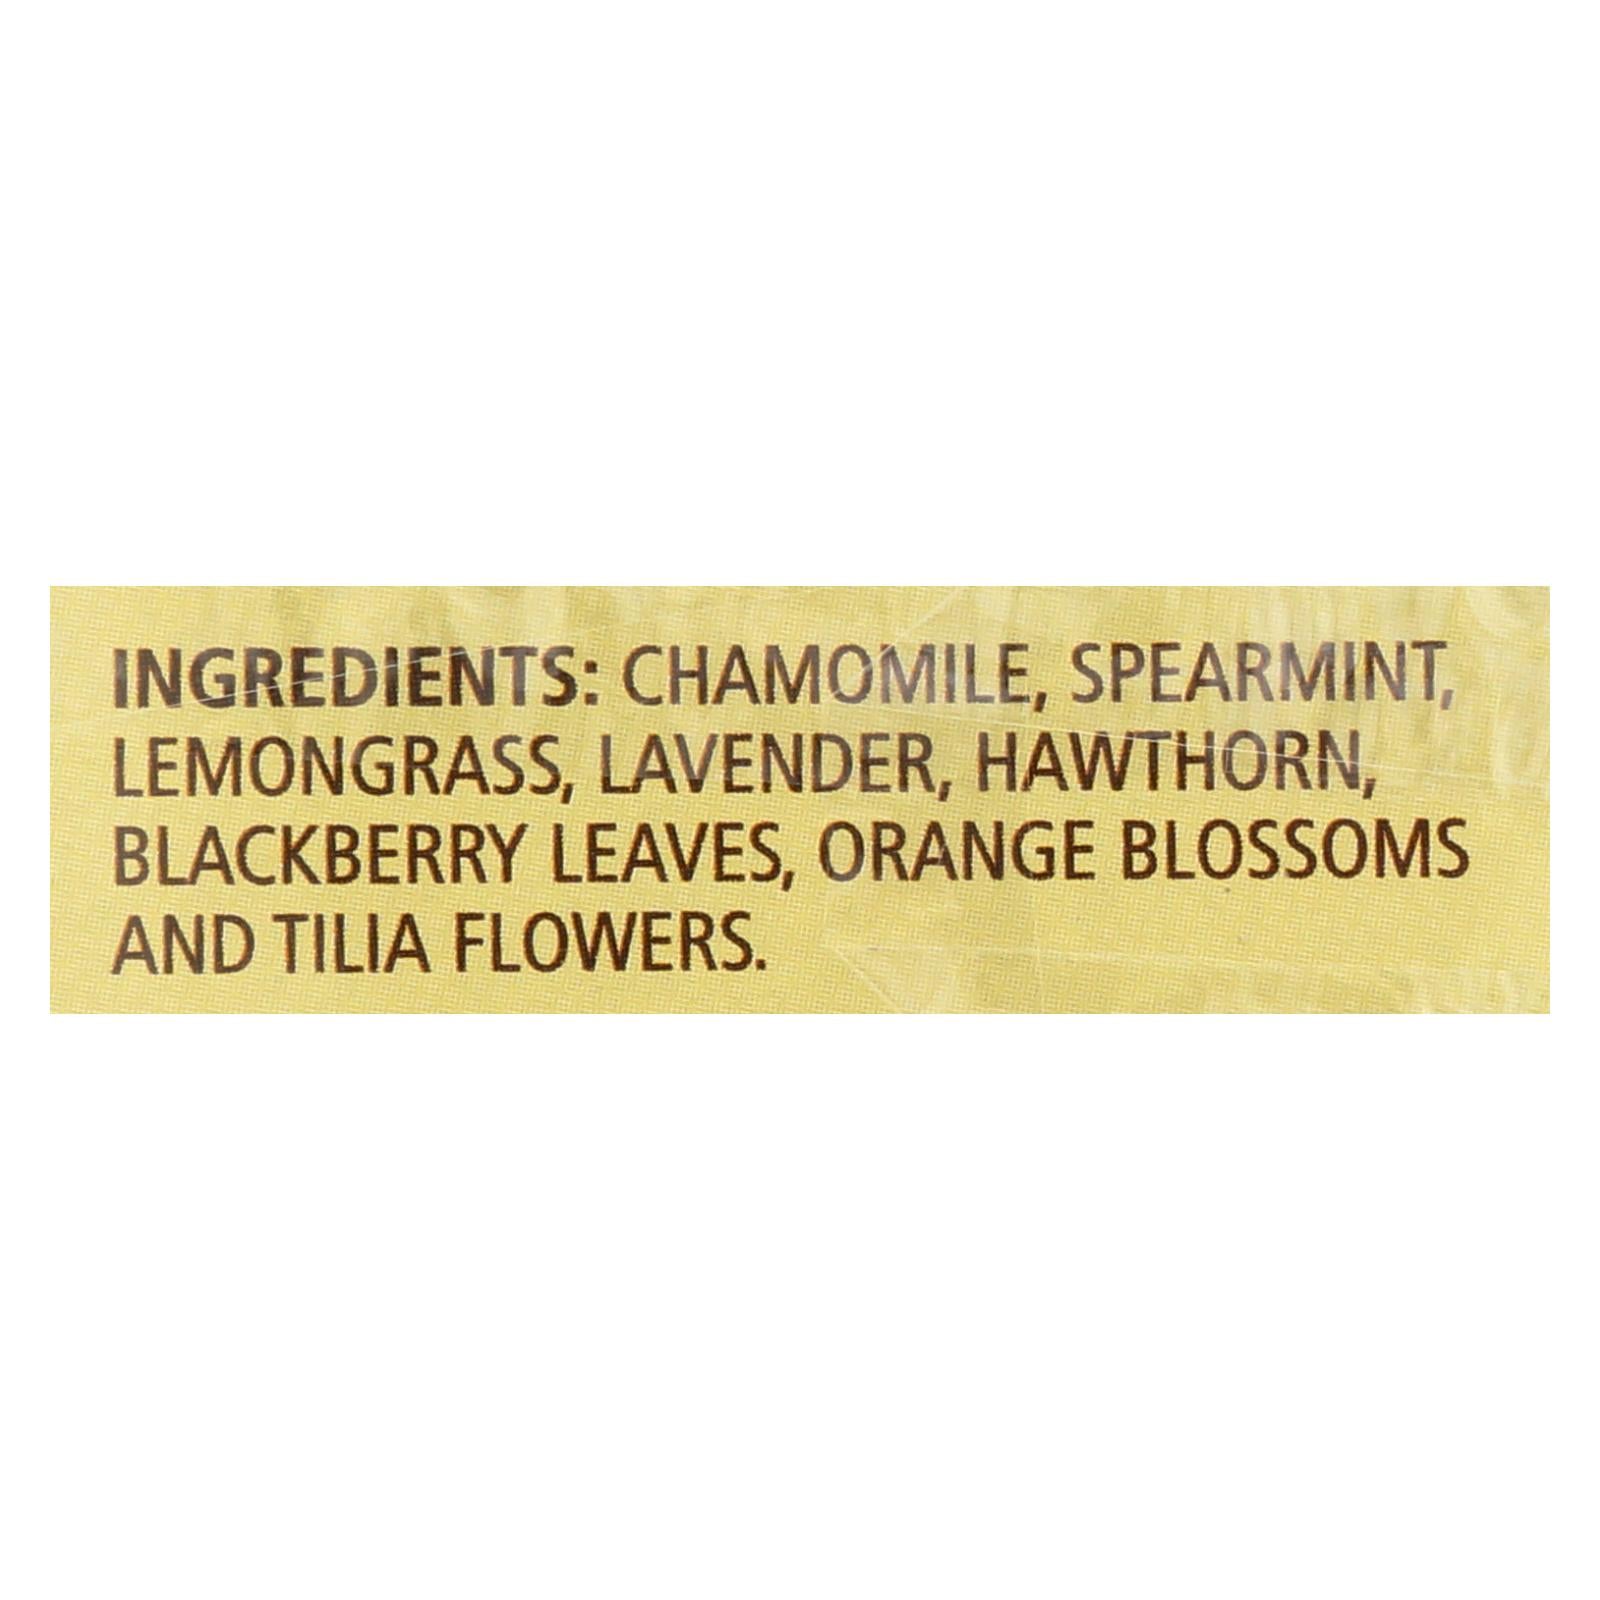 Celestial Seasonings - Tea - Sleepytime Lavender - Case of 6 - 20 Bags